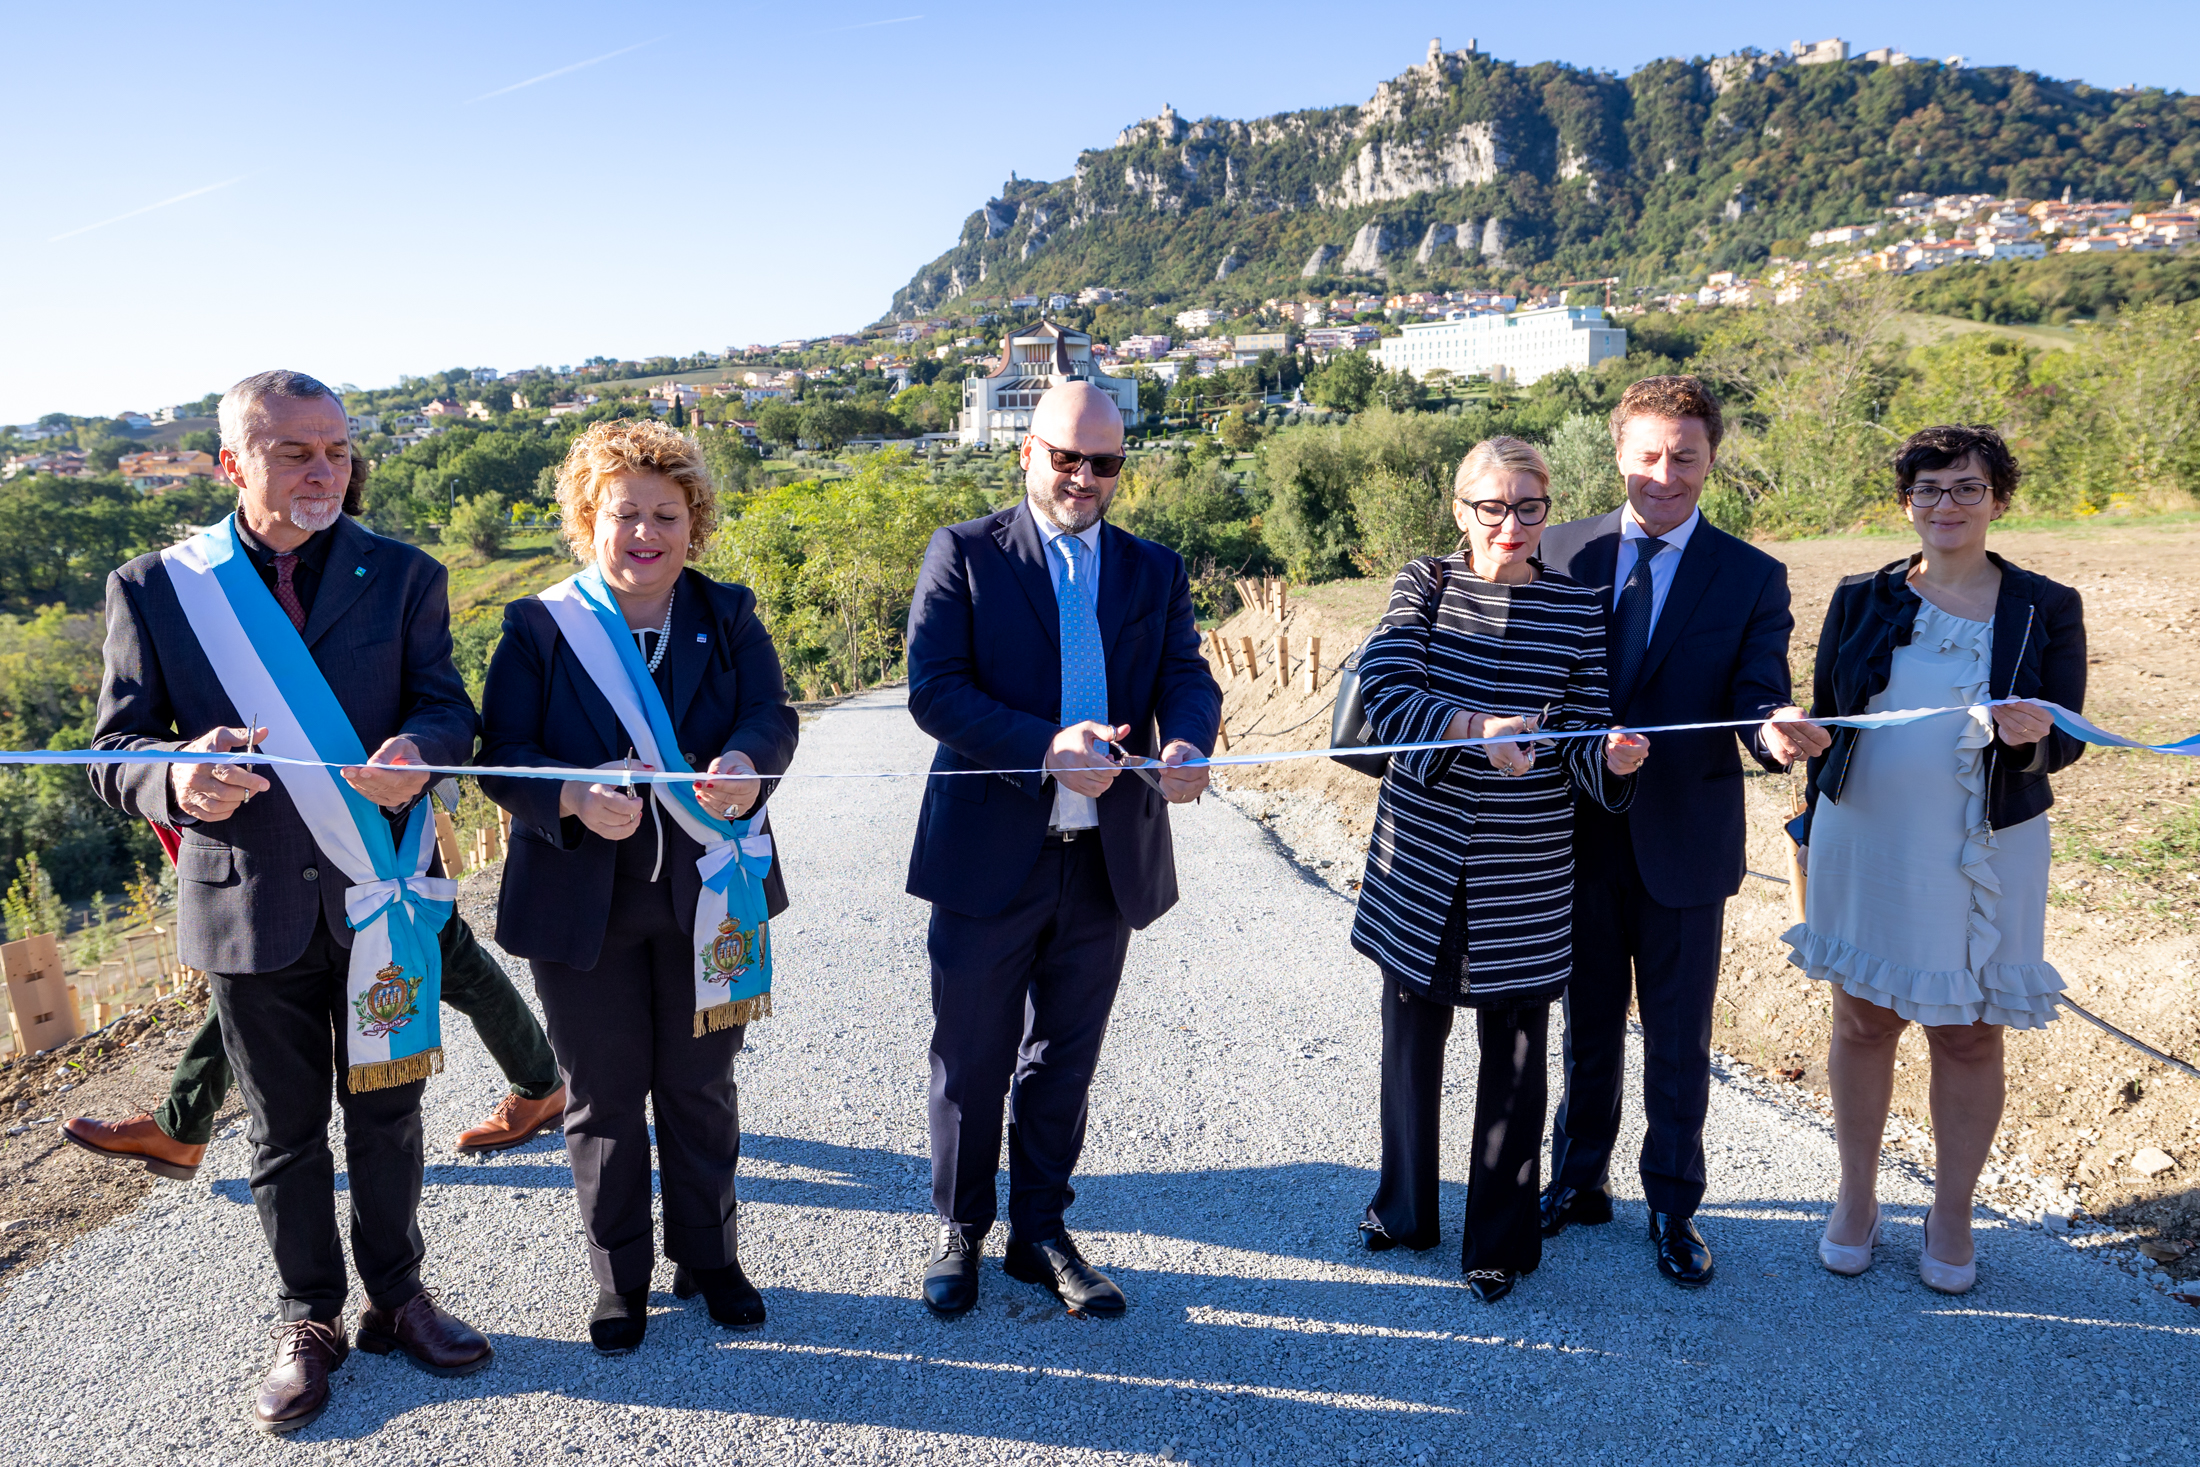 75 alberi piantati per l’UNECE a San Marino per promuovere città sostenibili per le generazioni attuali e future